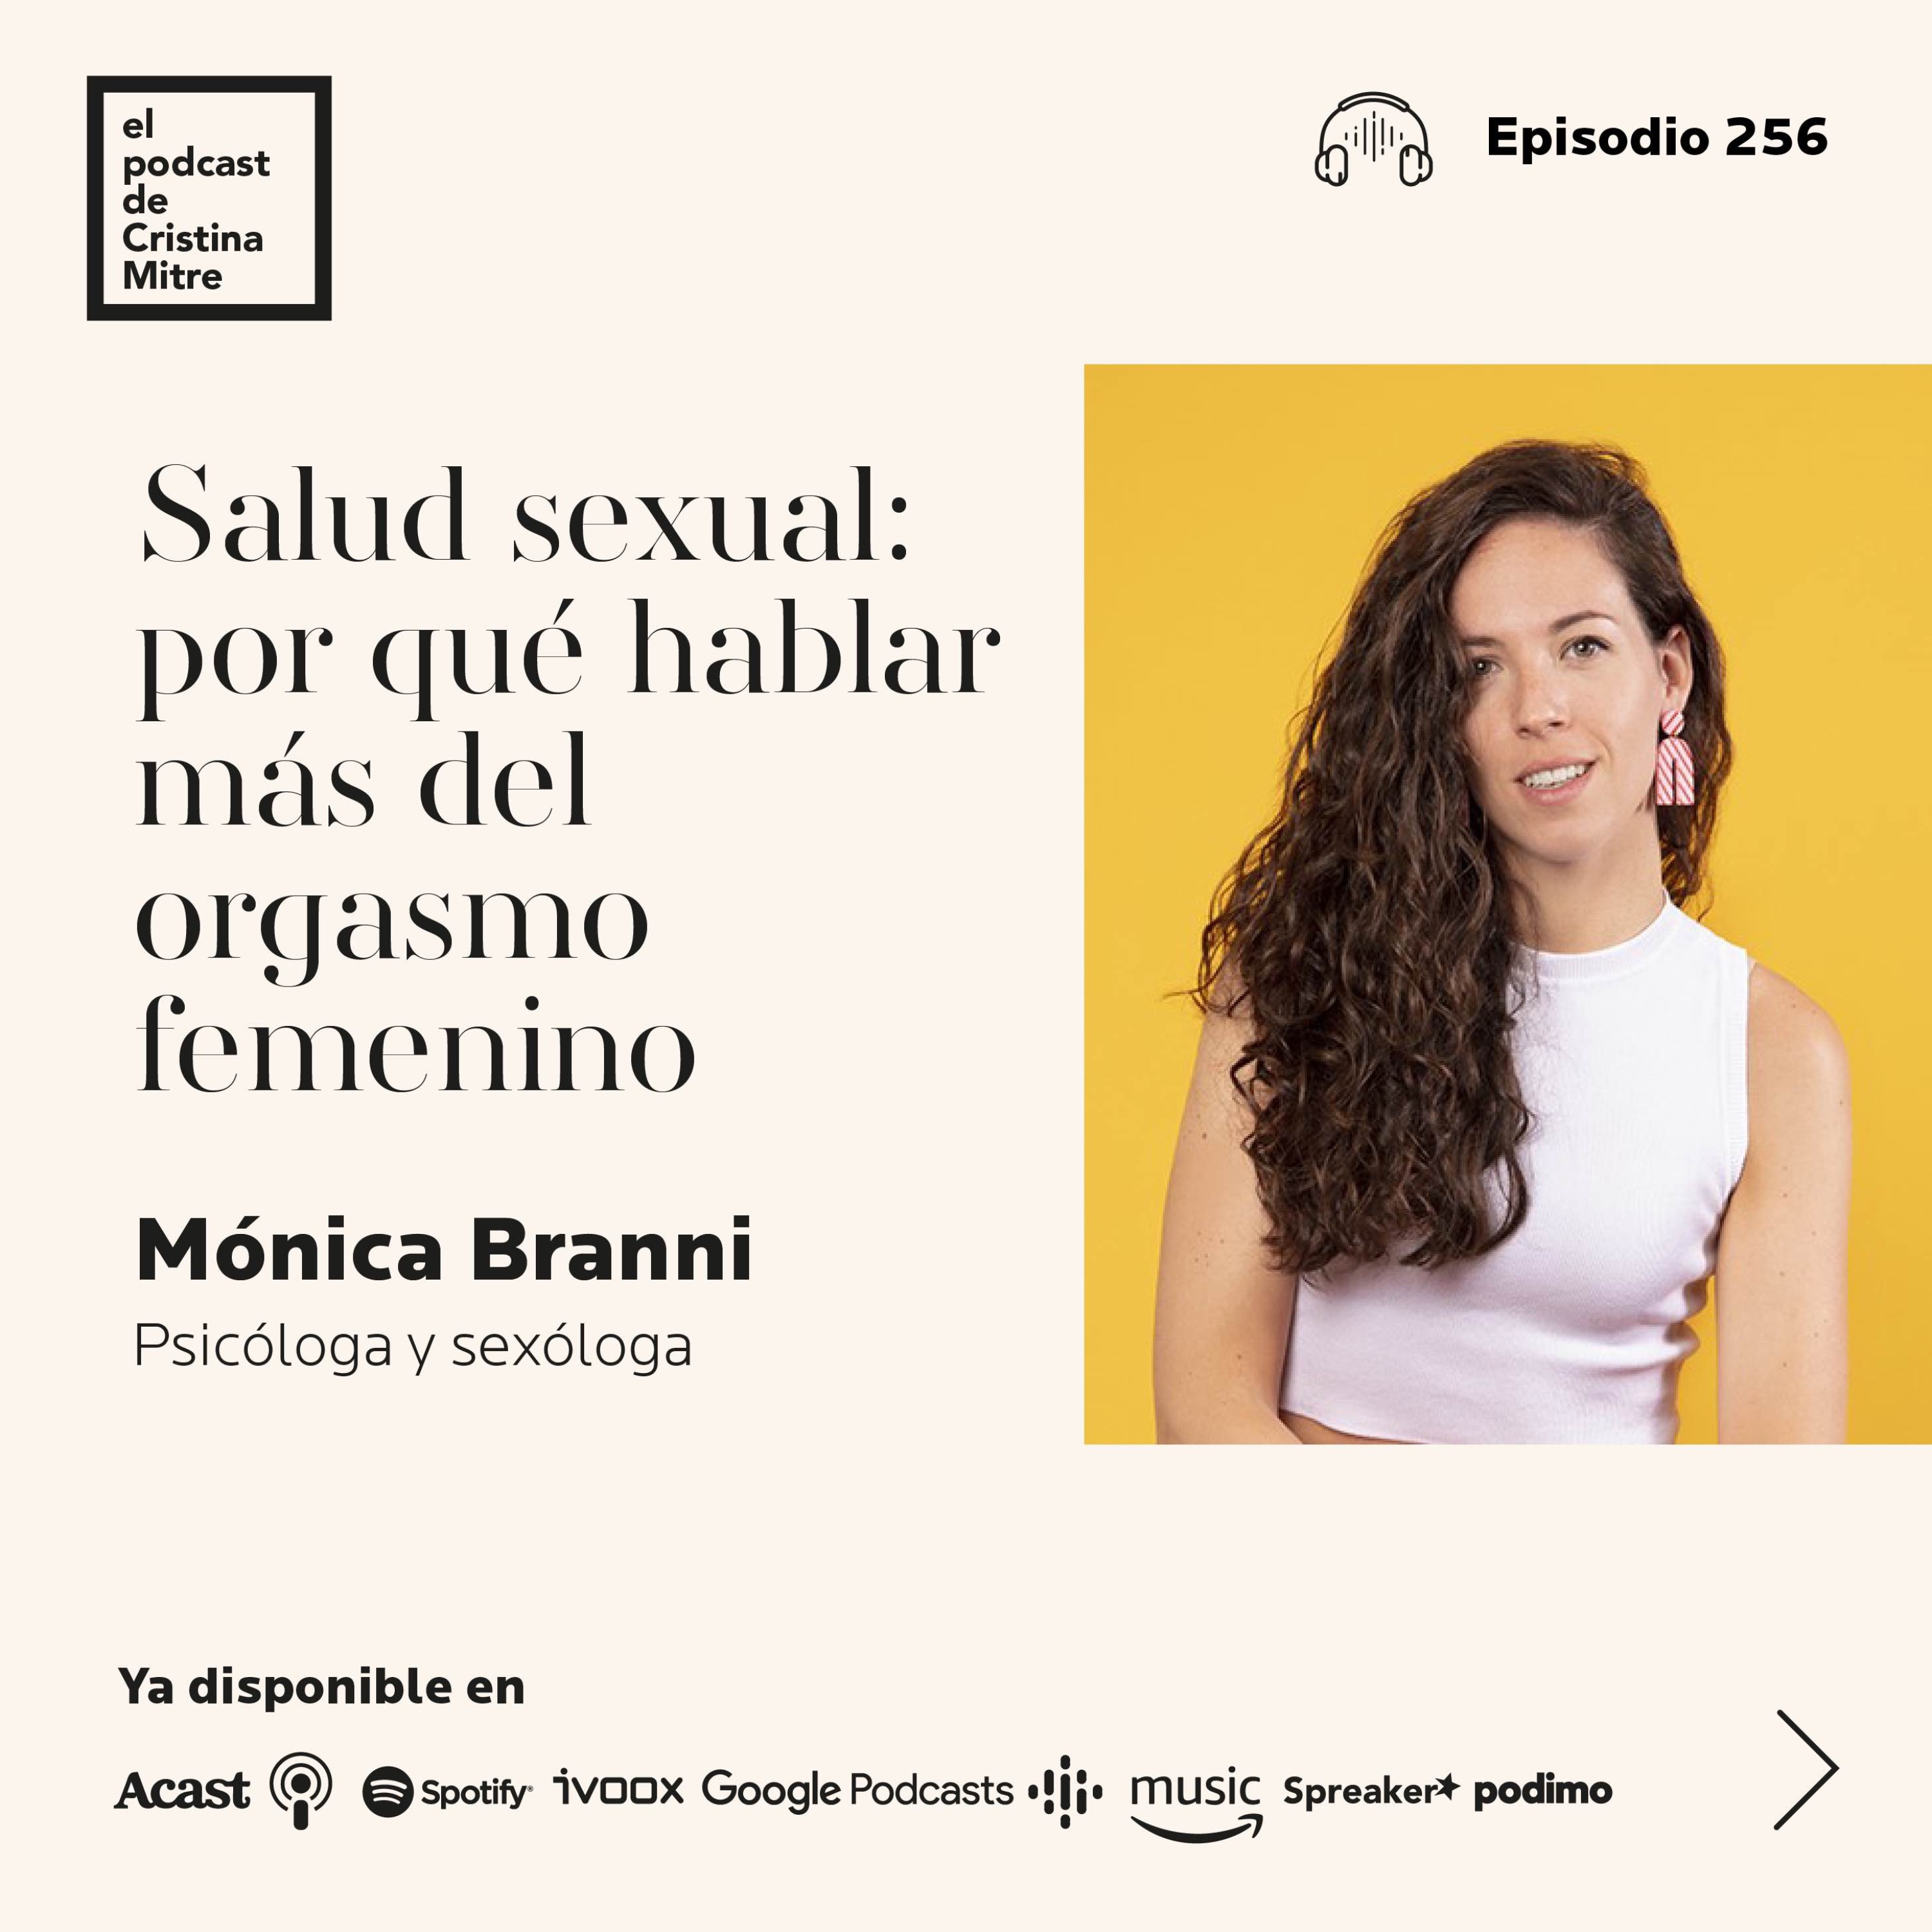 Salud sexual: por qué hablar más del orgasmo femenino, con Mónica Branni. Episodio 256